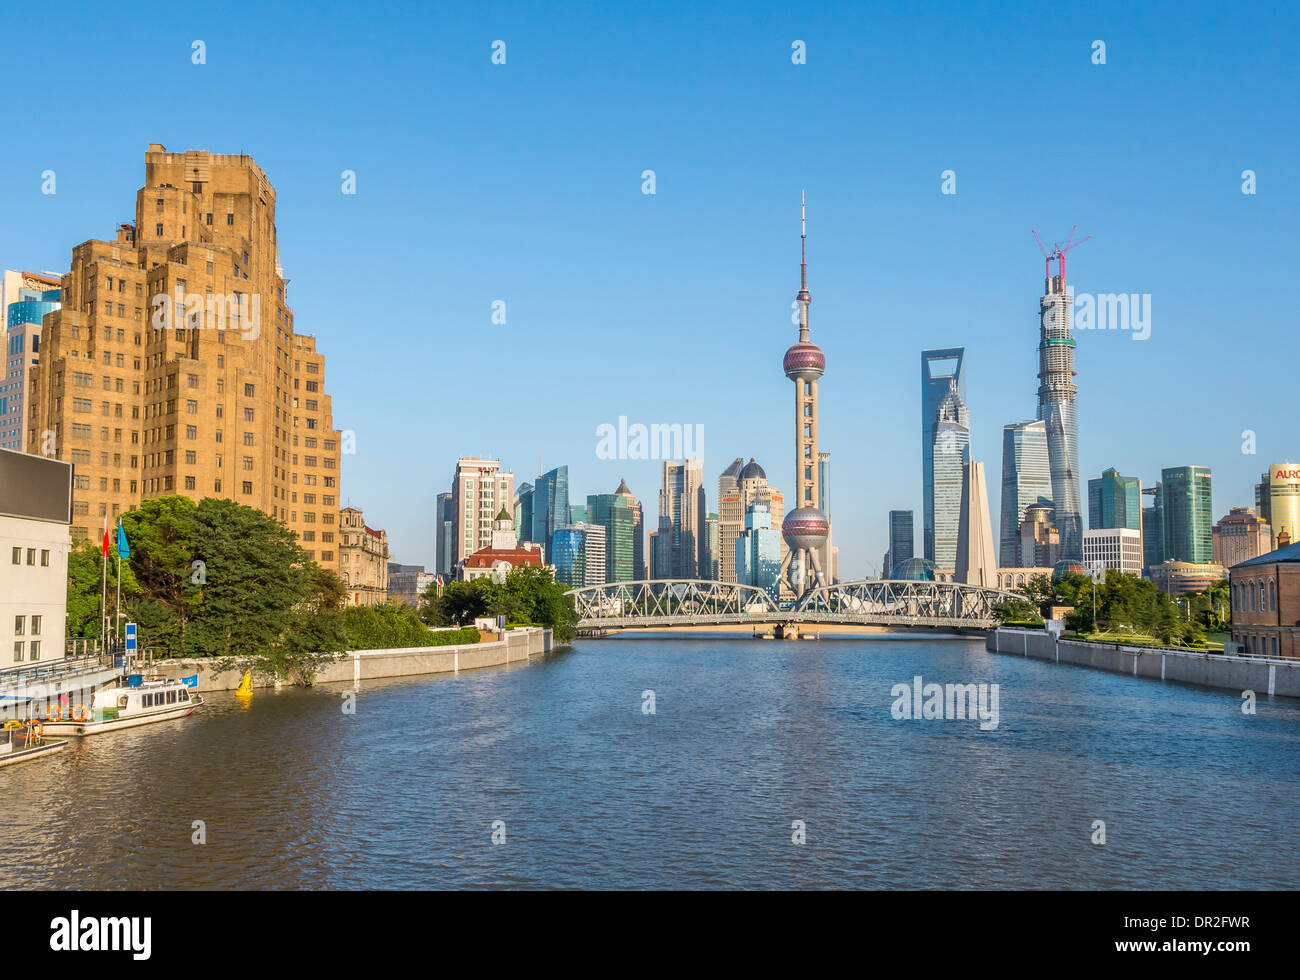 Waibaidu Bridge, Shanghai, China Stock Photo